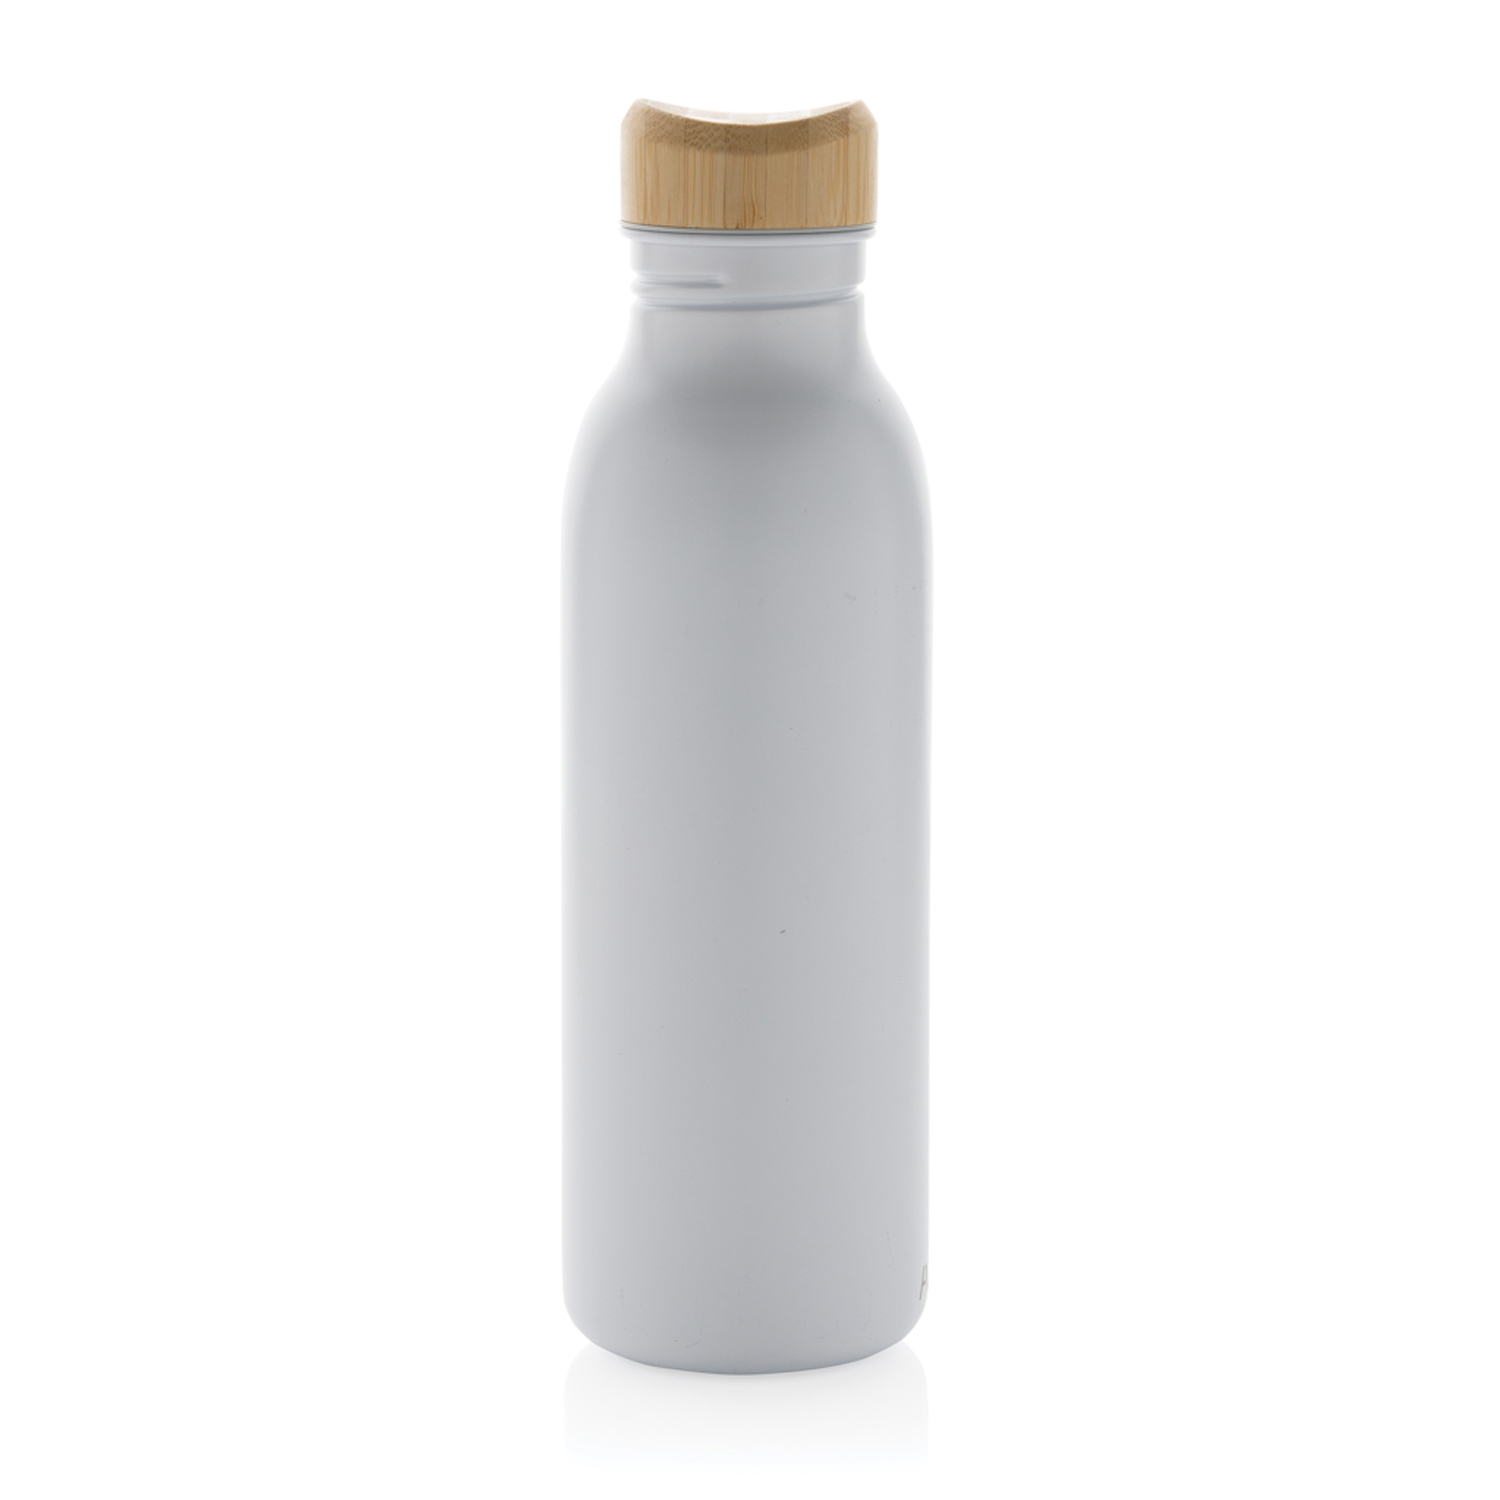 Бутылка для воды Avira Alcor из переработанной стали RCS